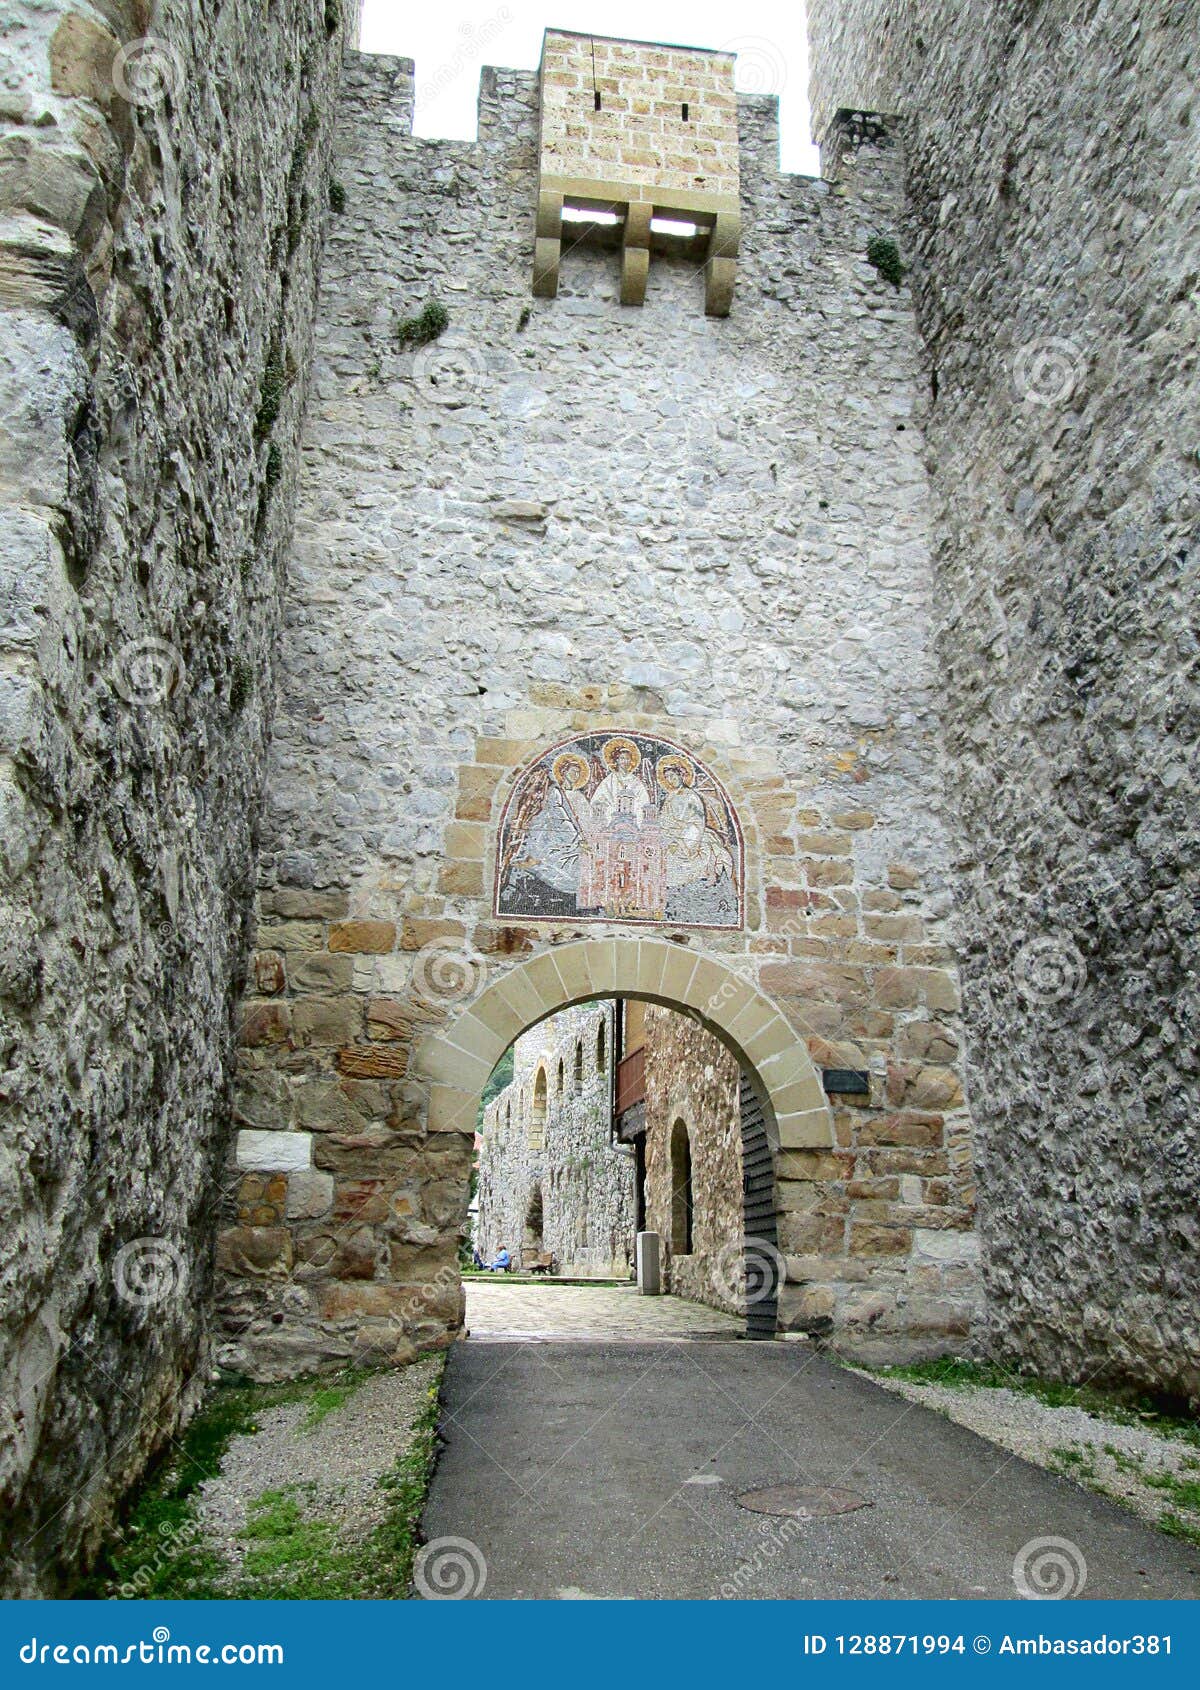 monastery manasija entrance in despotovac, serbia